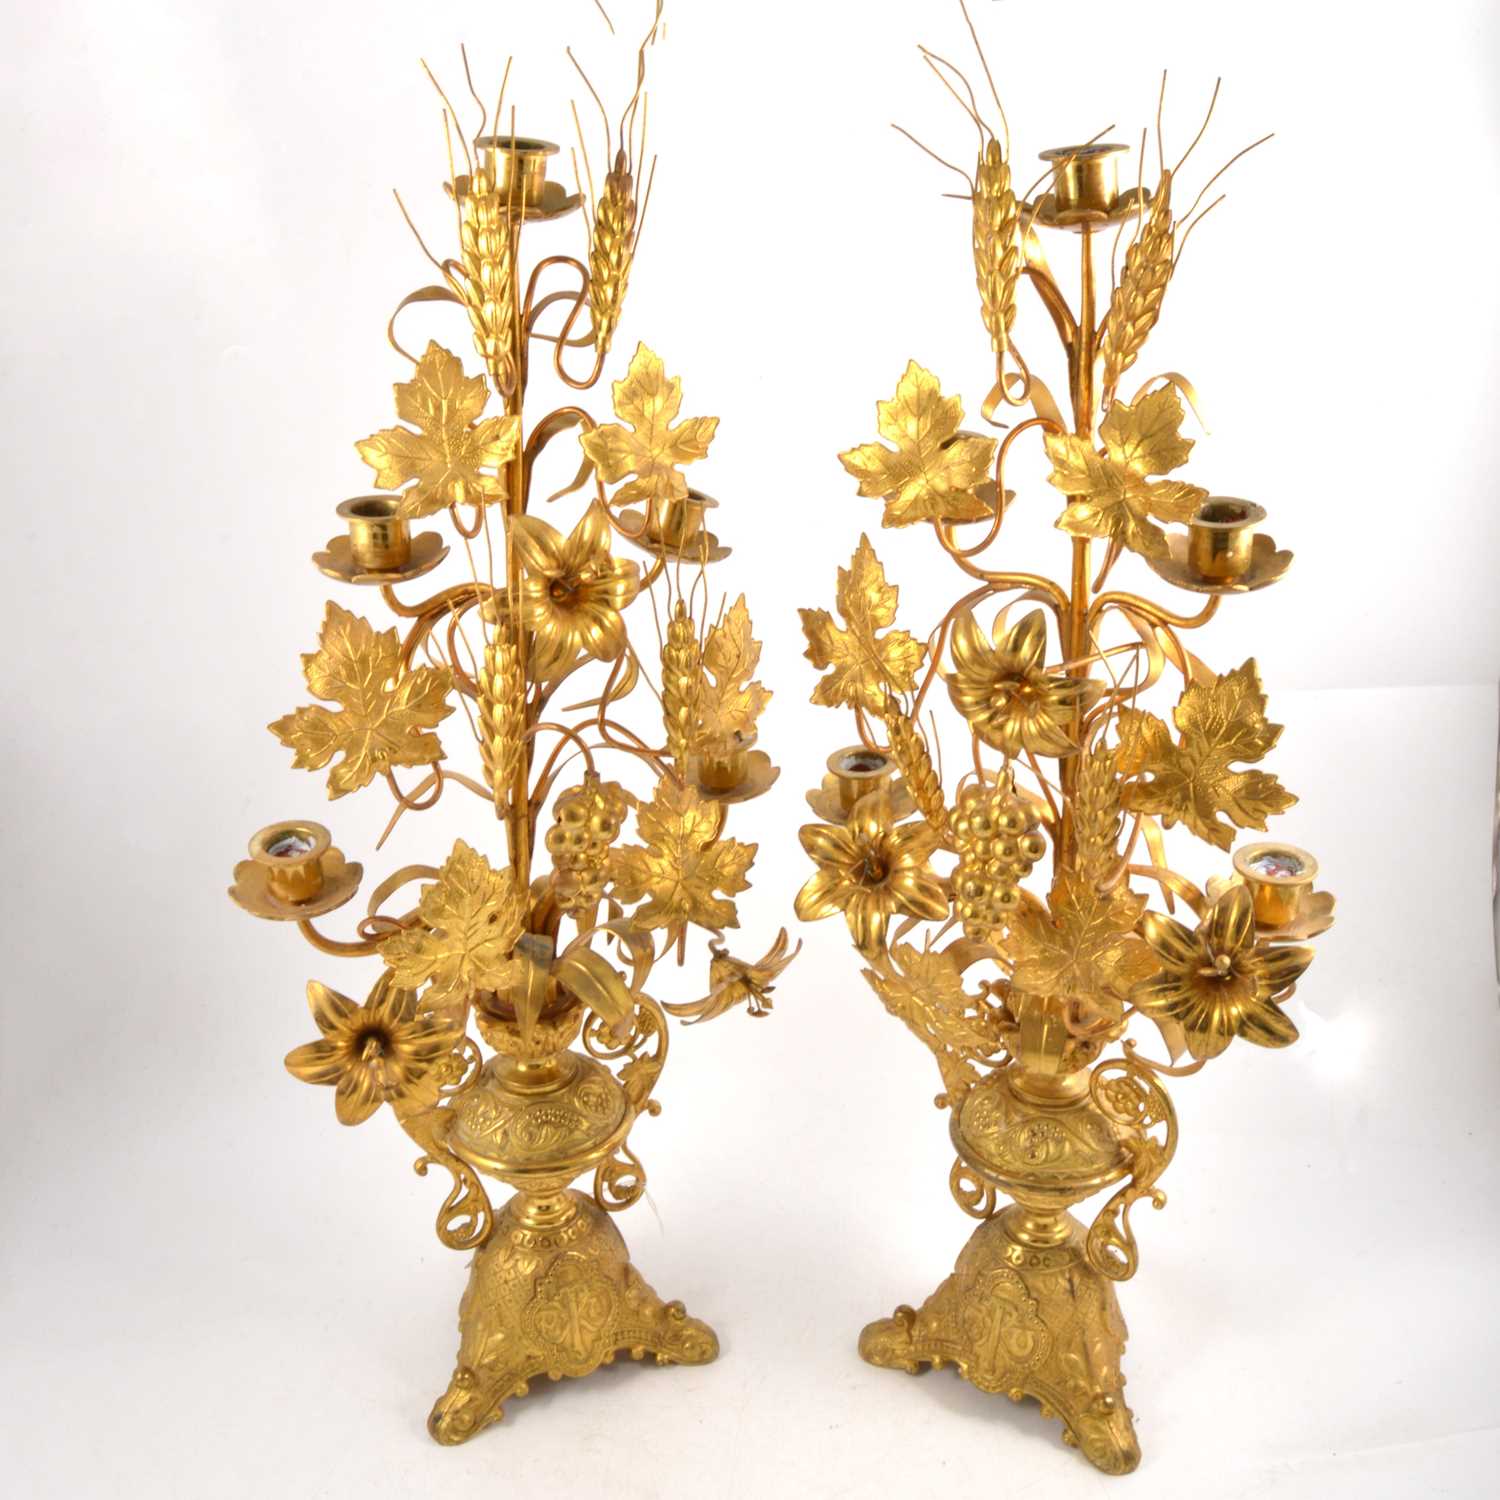 Lot 161 - Pair of gilt metal ornate altar candelabra with harvest motif.